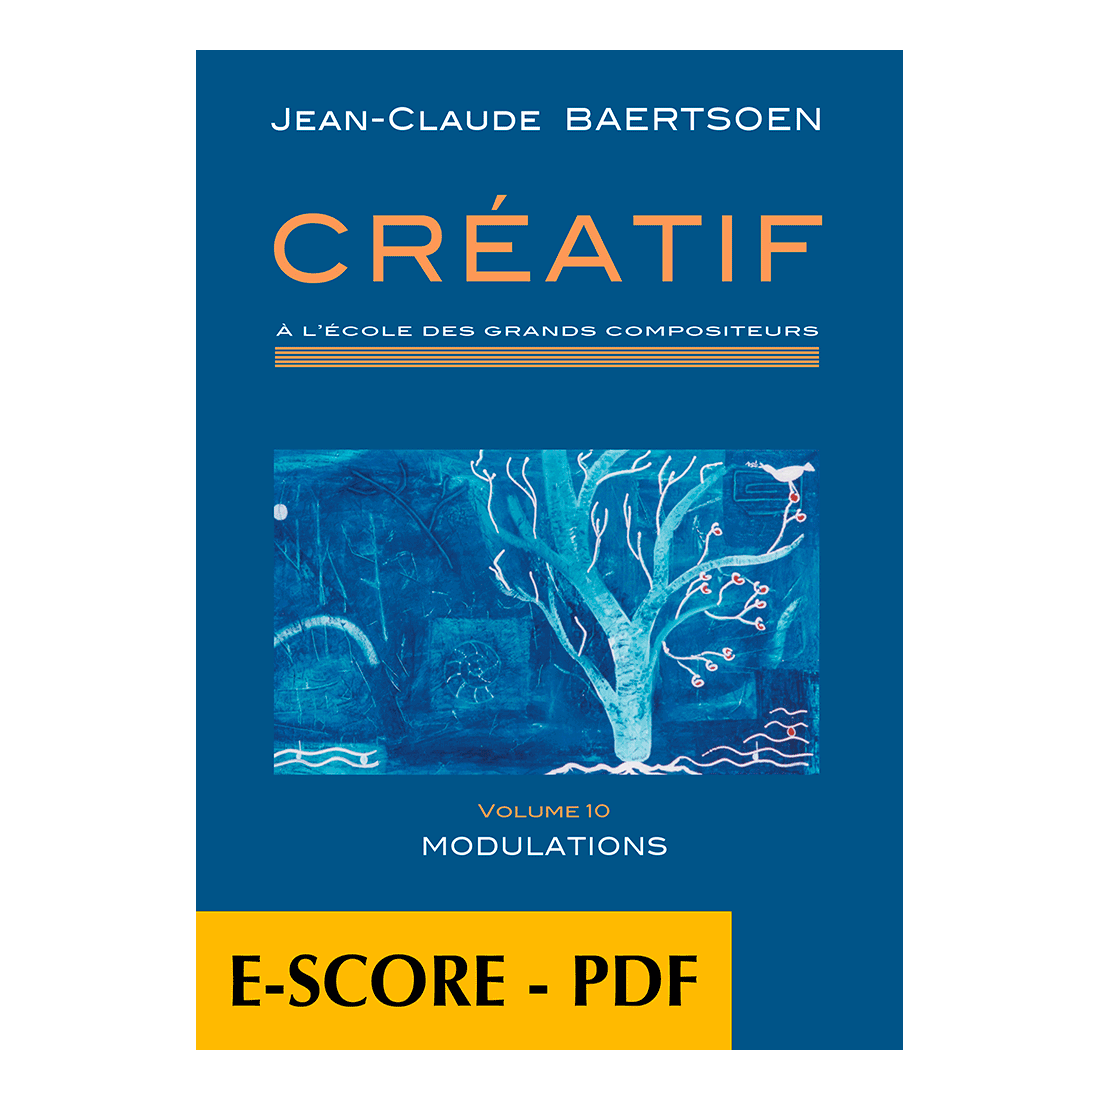 CREATIF A l'école des grands compositeurs - Vol. 10 Modulations